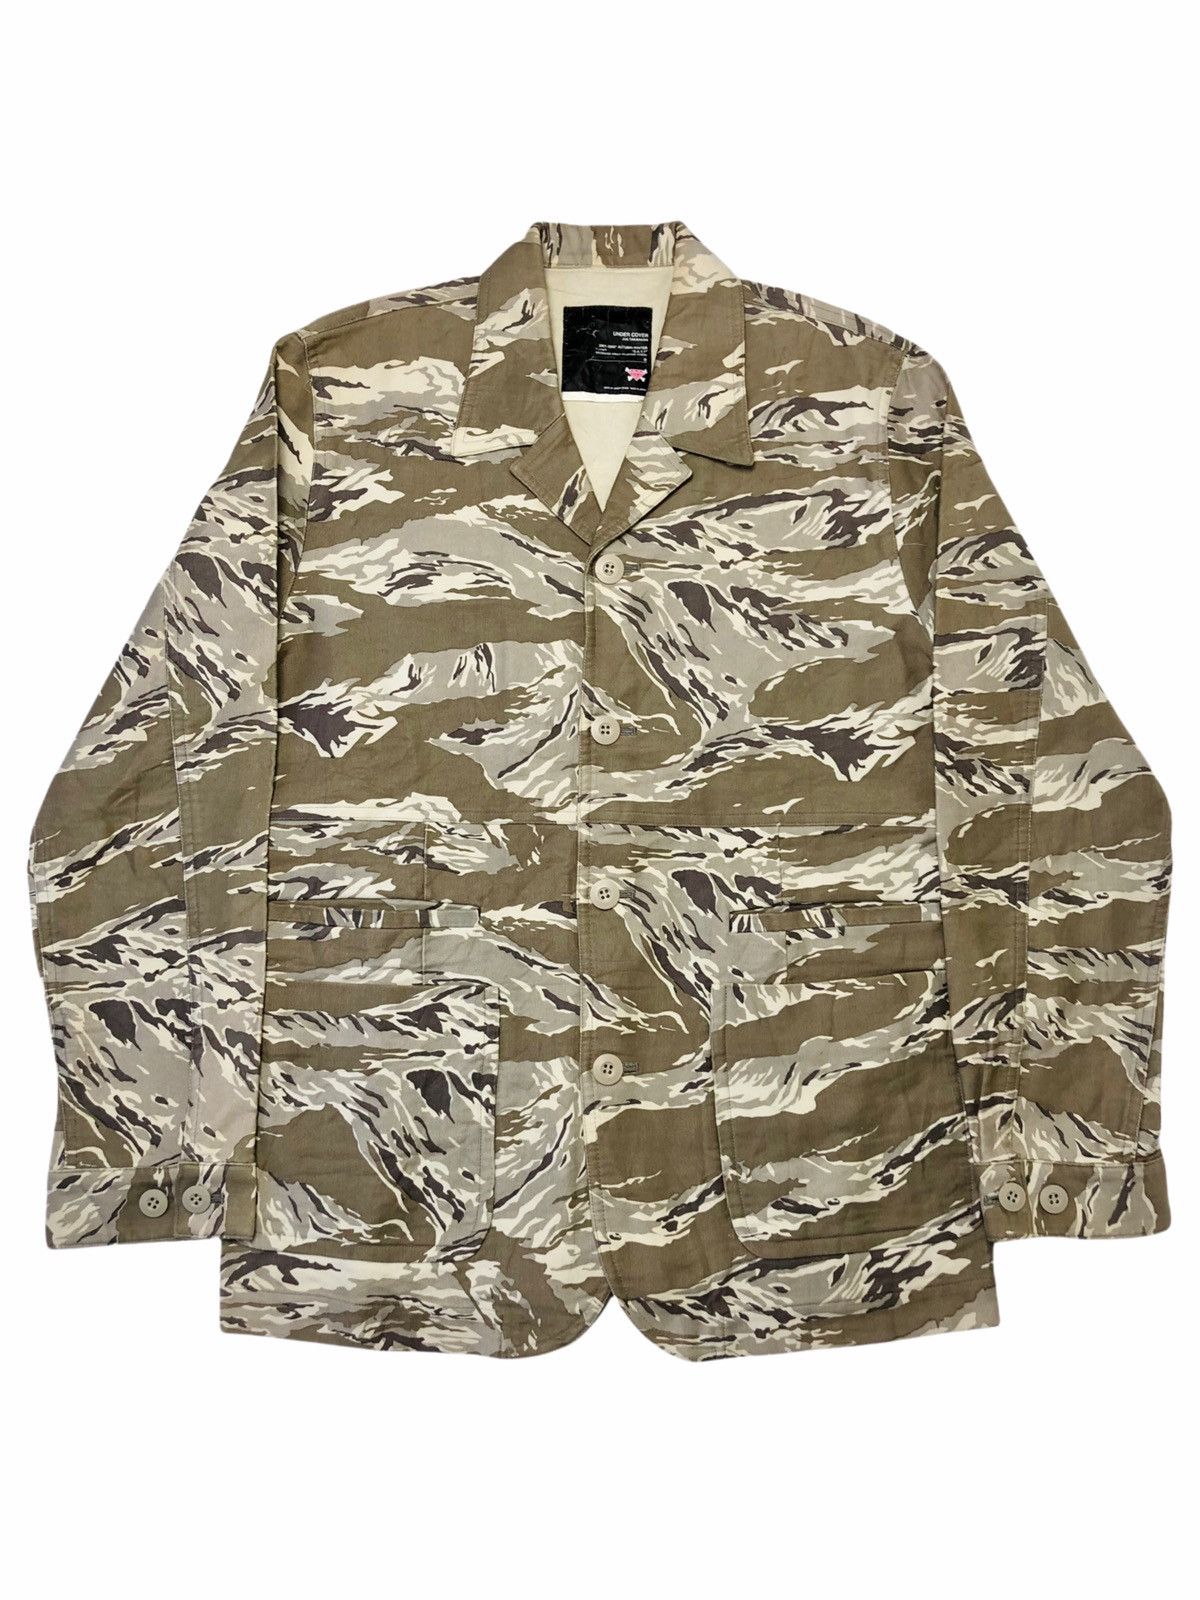 Undercover AW01-02 DAVF Multipocket Desert Camo Blazer Jacket | Grailed